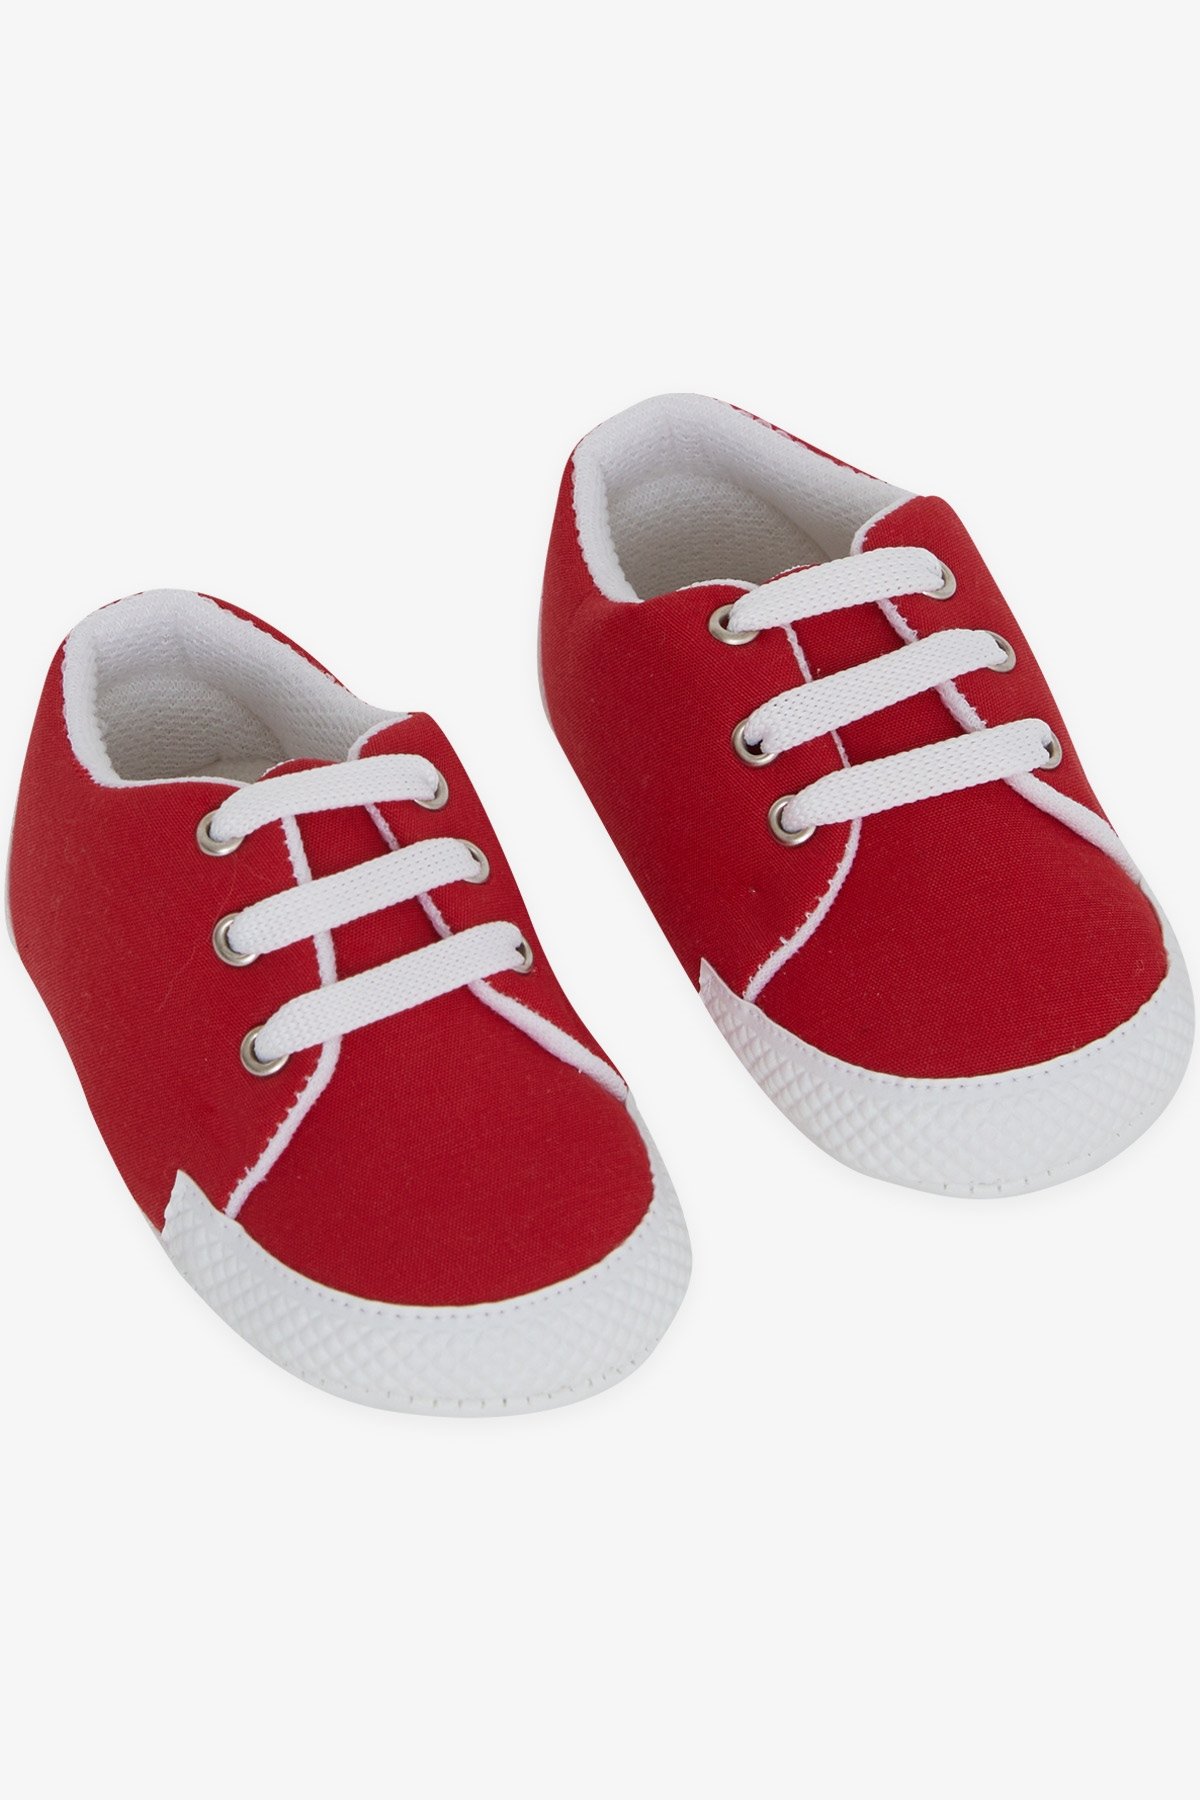 Kız Bebek Patik Ayakkabı Düz Renk Kırmızı 18 Numara-19 Numara - Tatlı Bebek  Ayakkabıları | Breeze